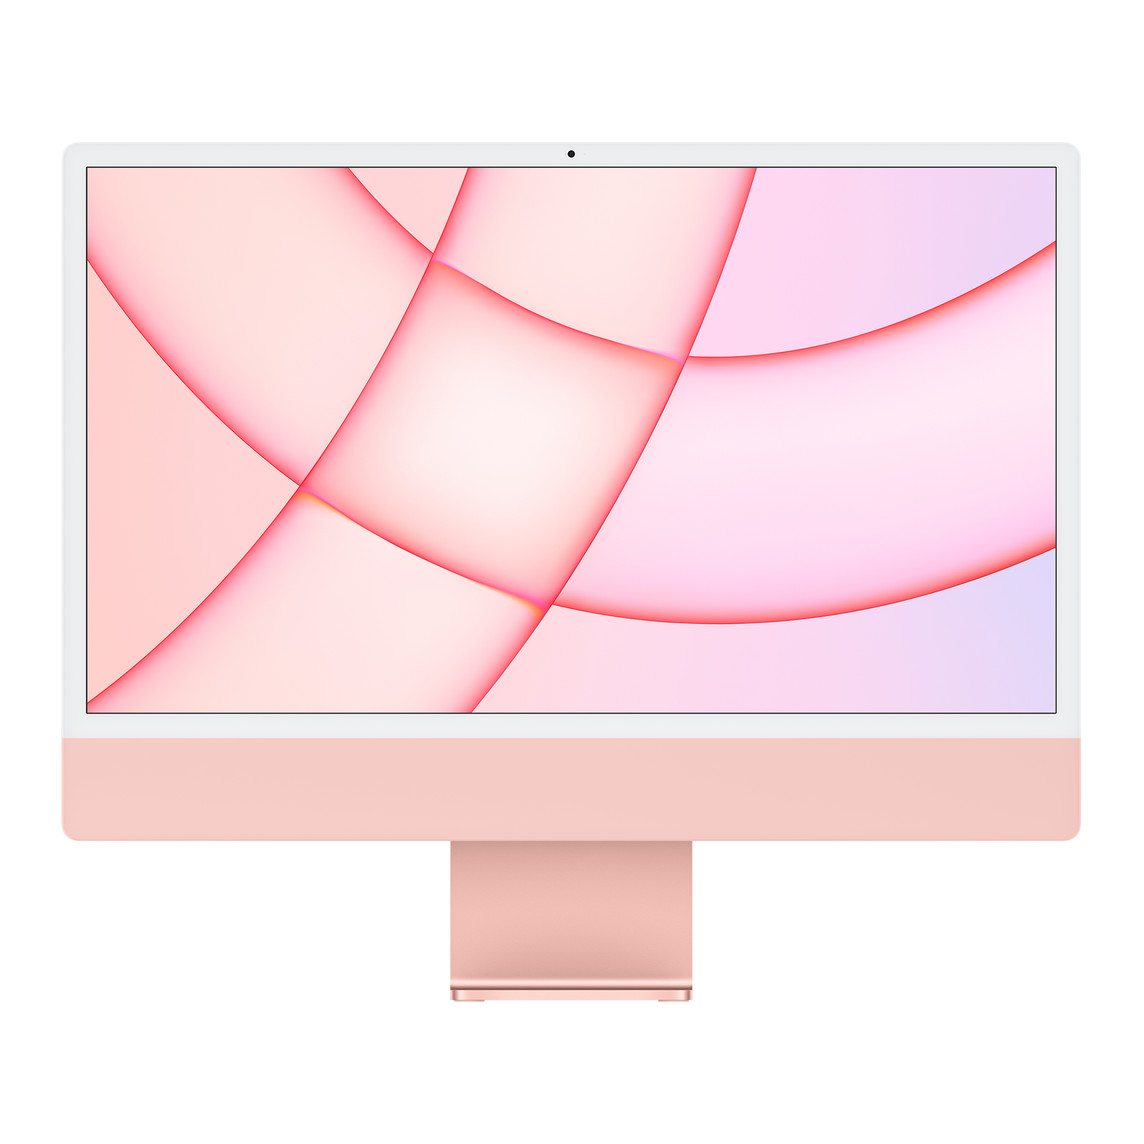 Vista frontal del exterior del iMac, que muestra el marco blanco de la pantalla, el exterior y el soporte de aluminio en rosa